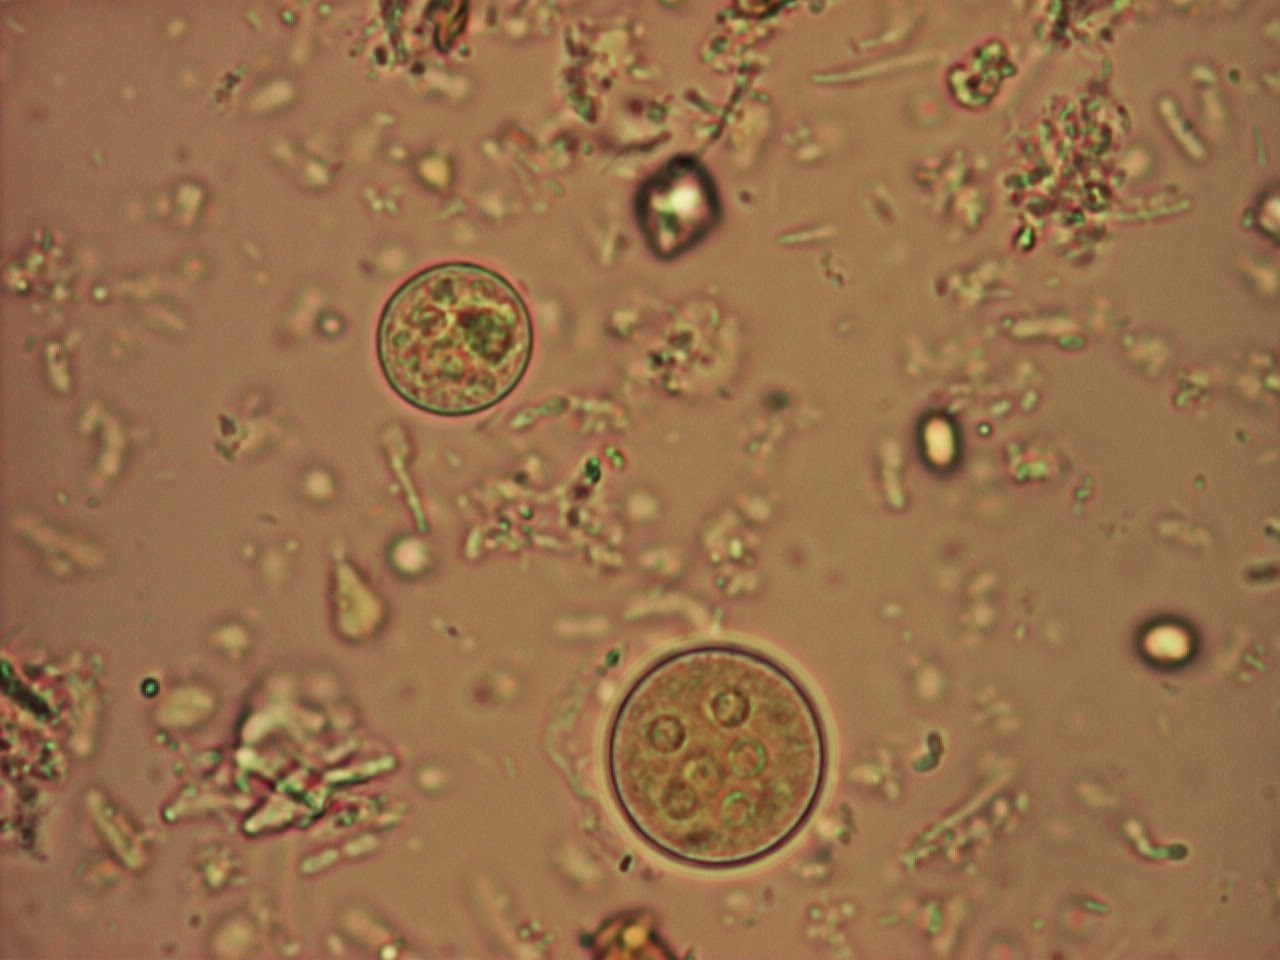 Простейшие в кале лечение. Цисты лямблии микроскопия. Цисты лямблий микроскопия кала. Циста лямблии под микроскопом. Цисты кишечной амебы (Entamoeba coli).